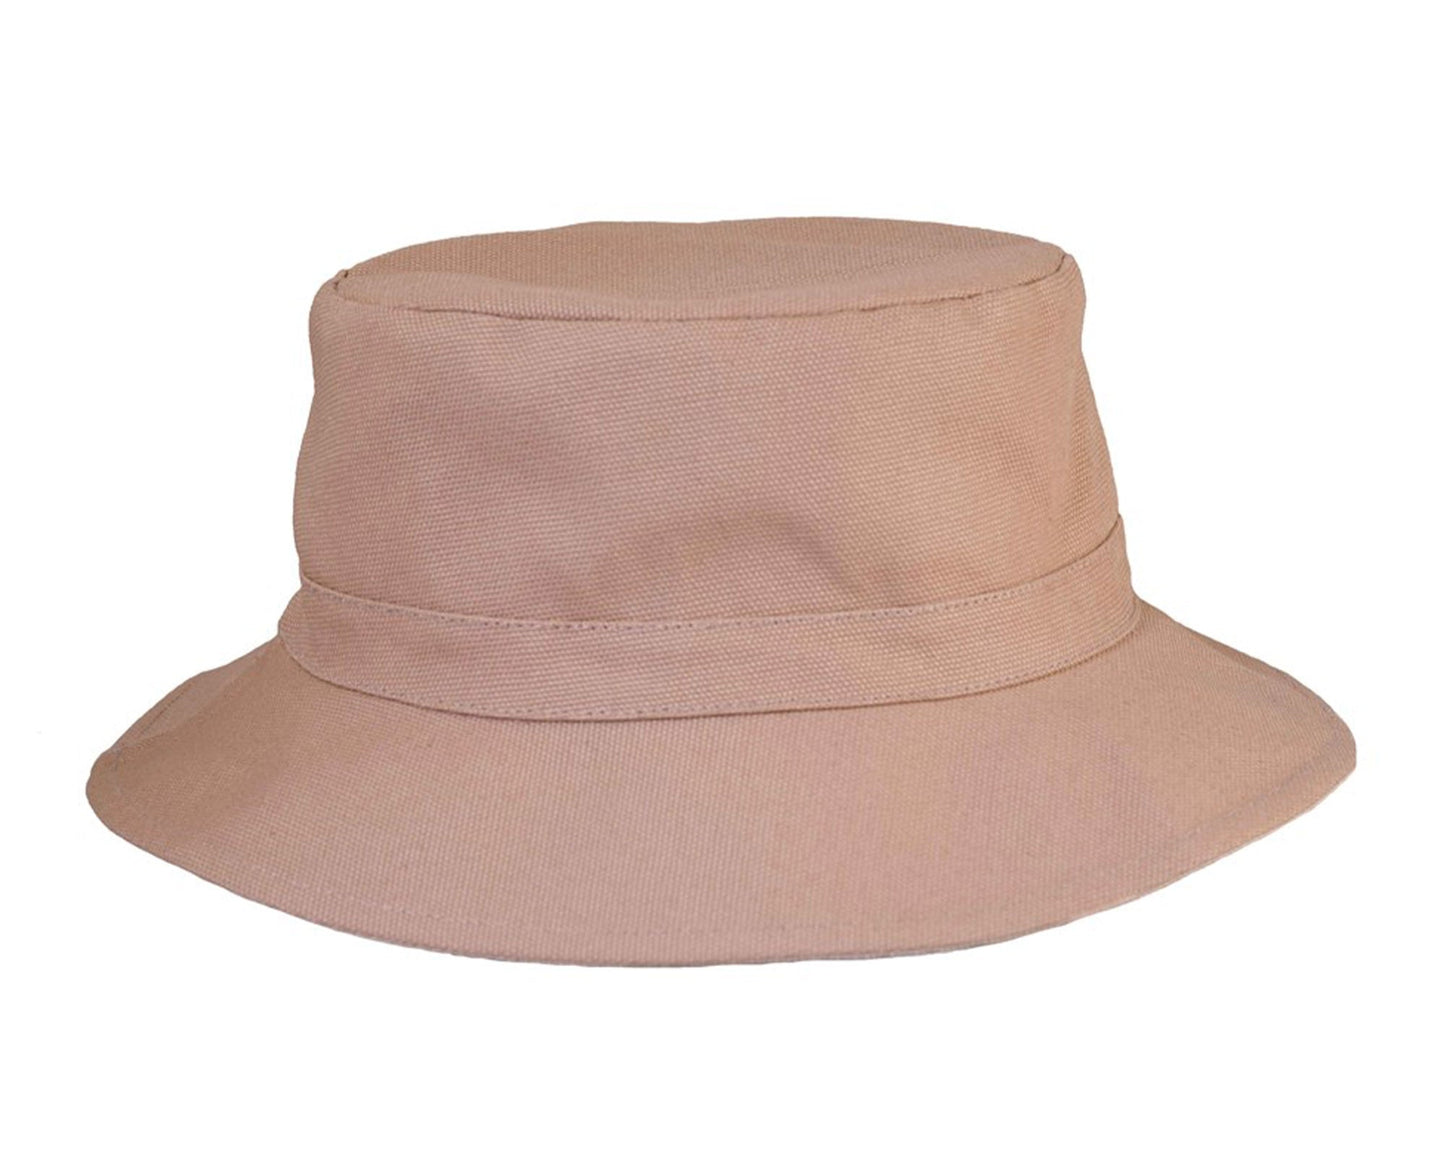 The Flipside Bucket Hat - Tan Reversible